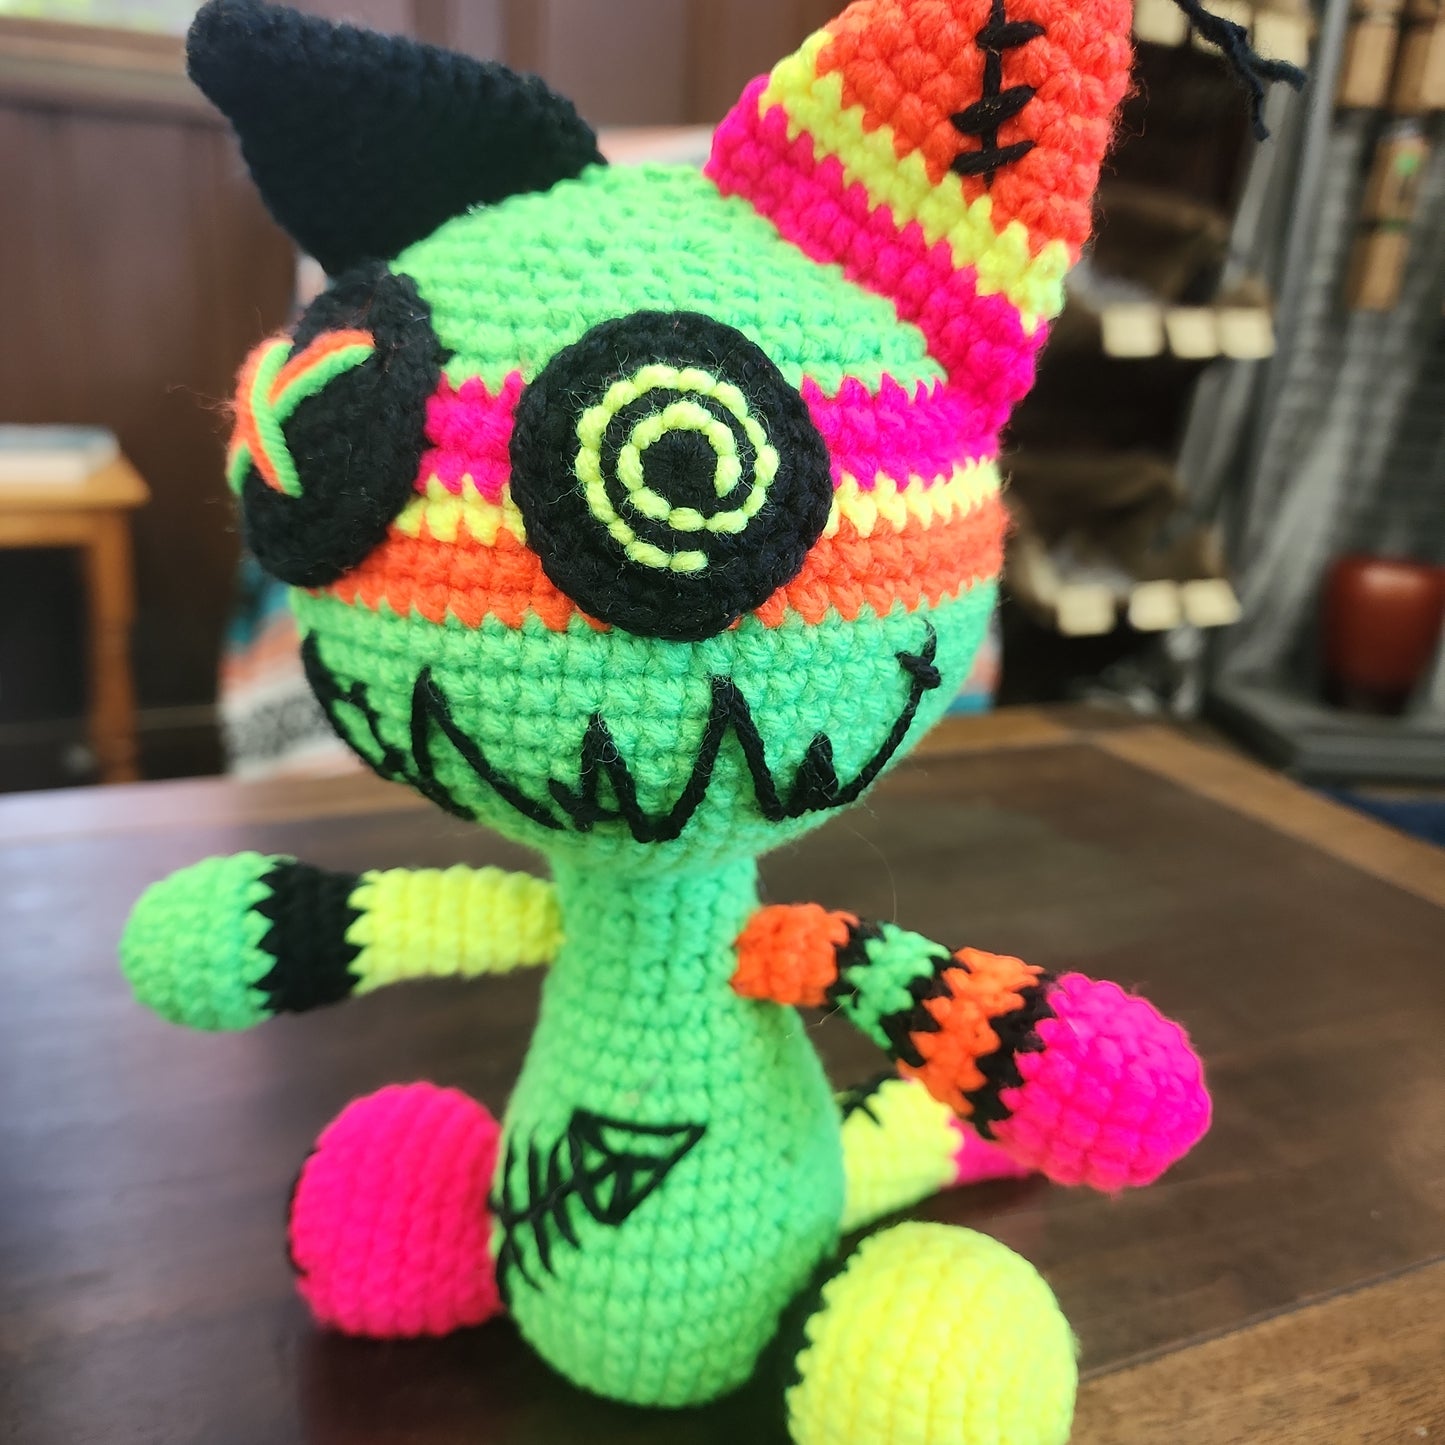 Crochet Creatures - Amigurumi Zombie Cat